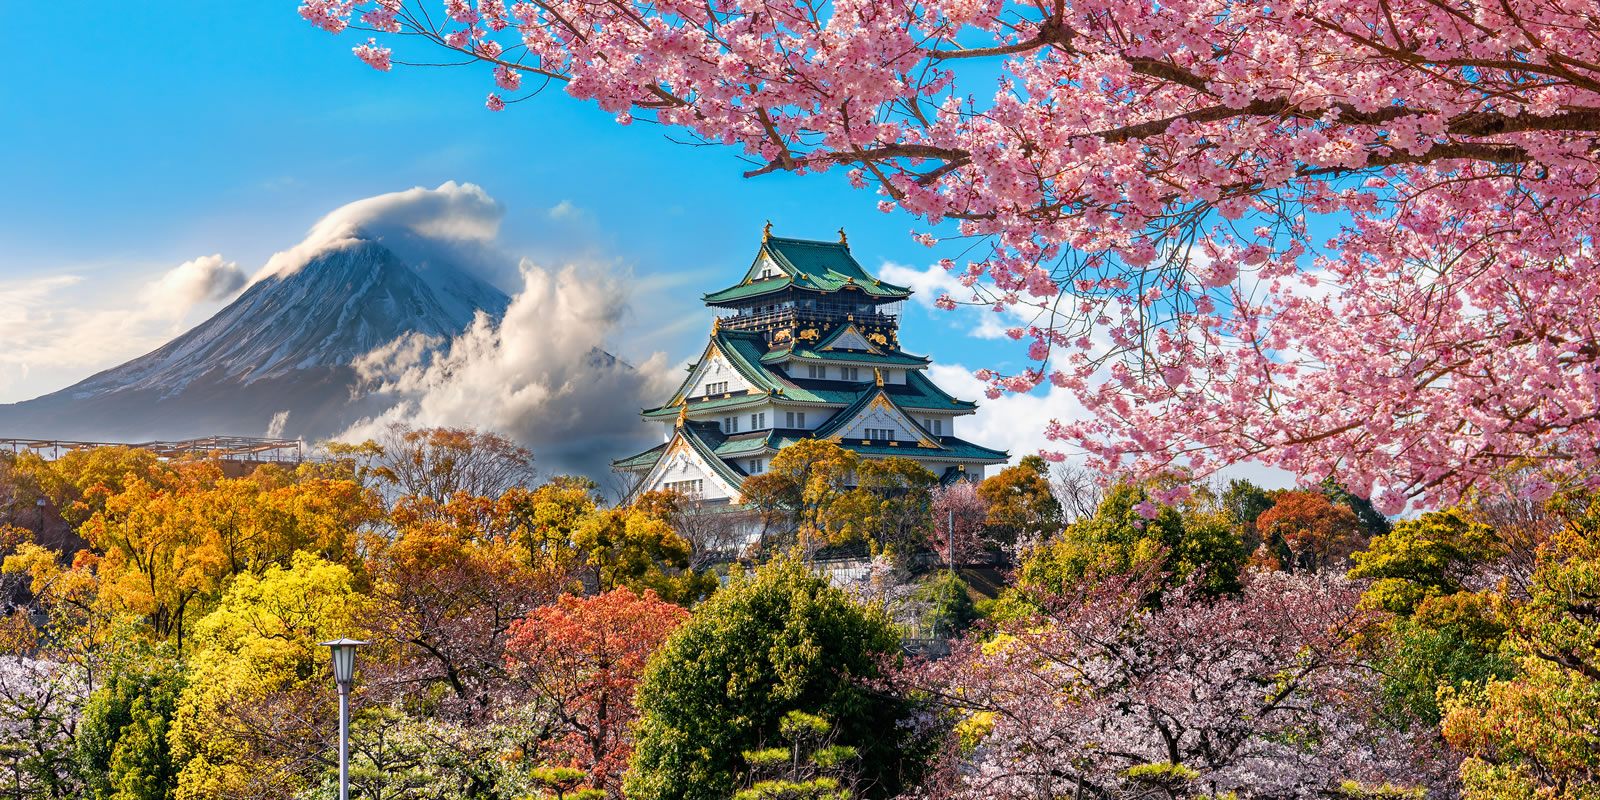 Daftar 7 Kota Super Indah yang Wajib Sobat Kunjungi di Negeri Sakura Ini, Jepang!